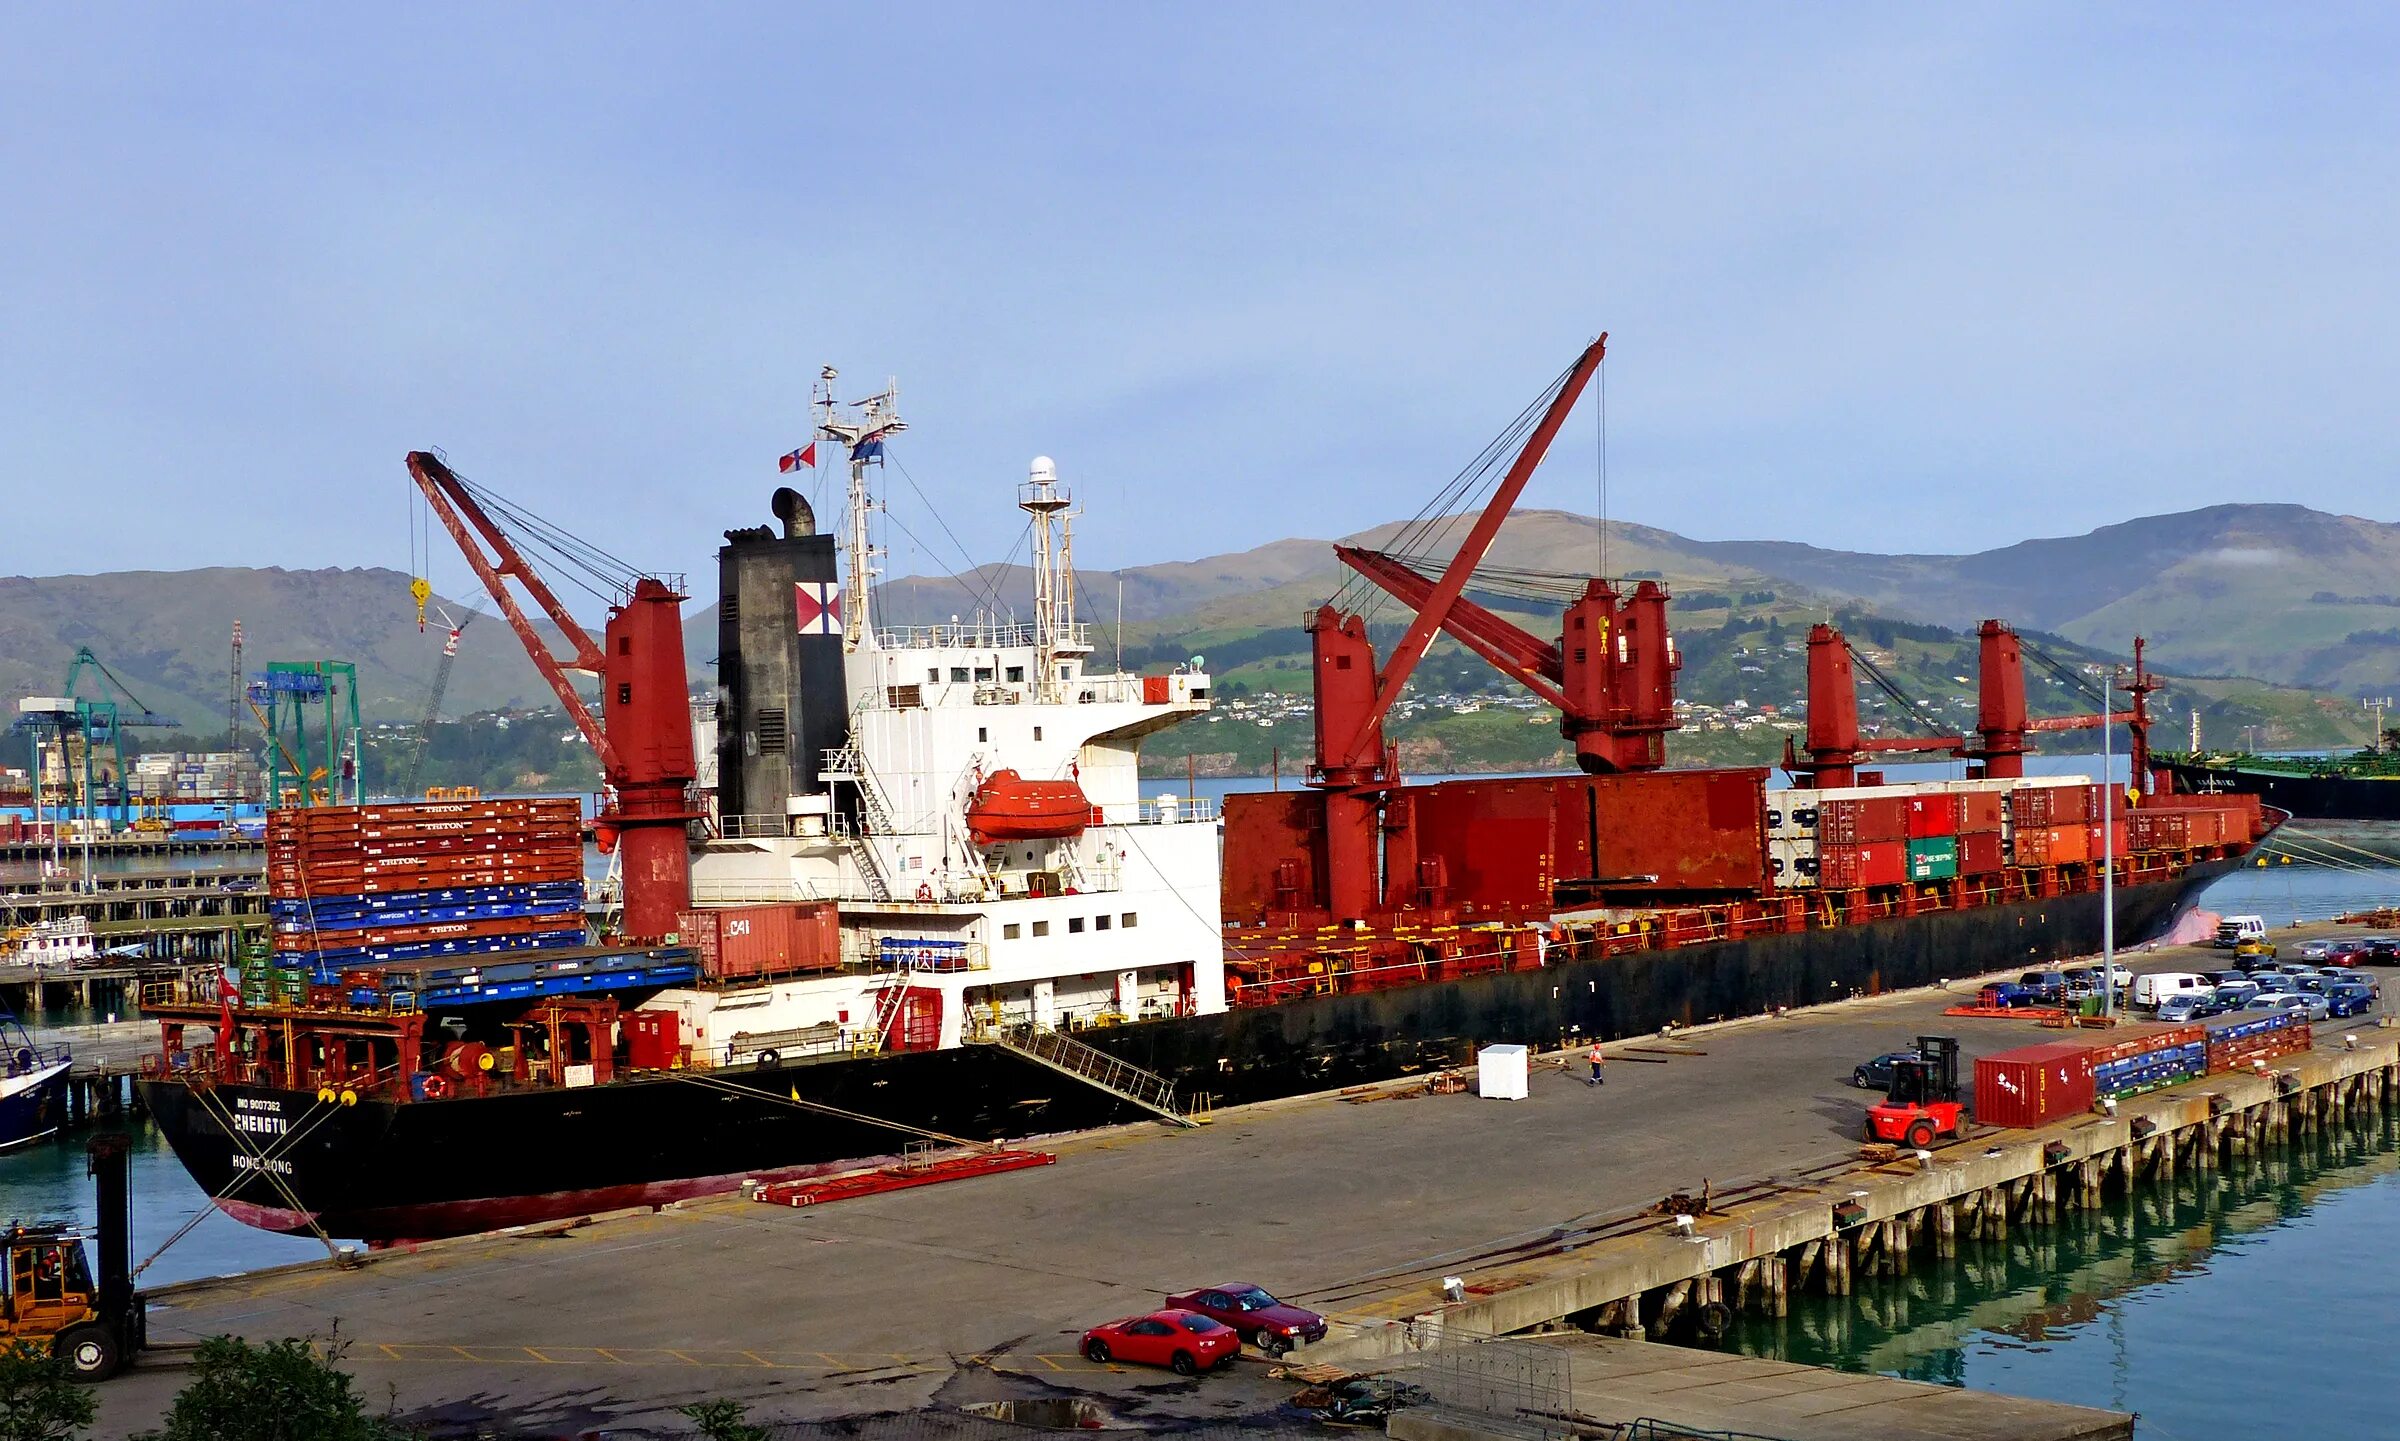 Cargo vessel. Грузовой порт Донхэ. Грузовой порт Хошимин. Китайские портовые тягачи. Грузовой порт Тиват.